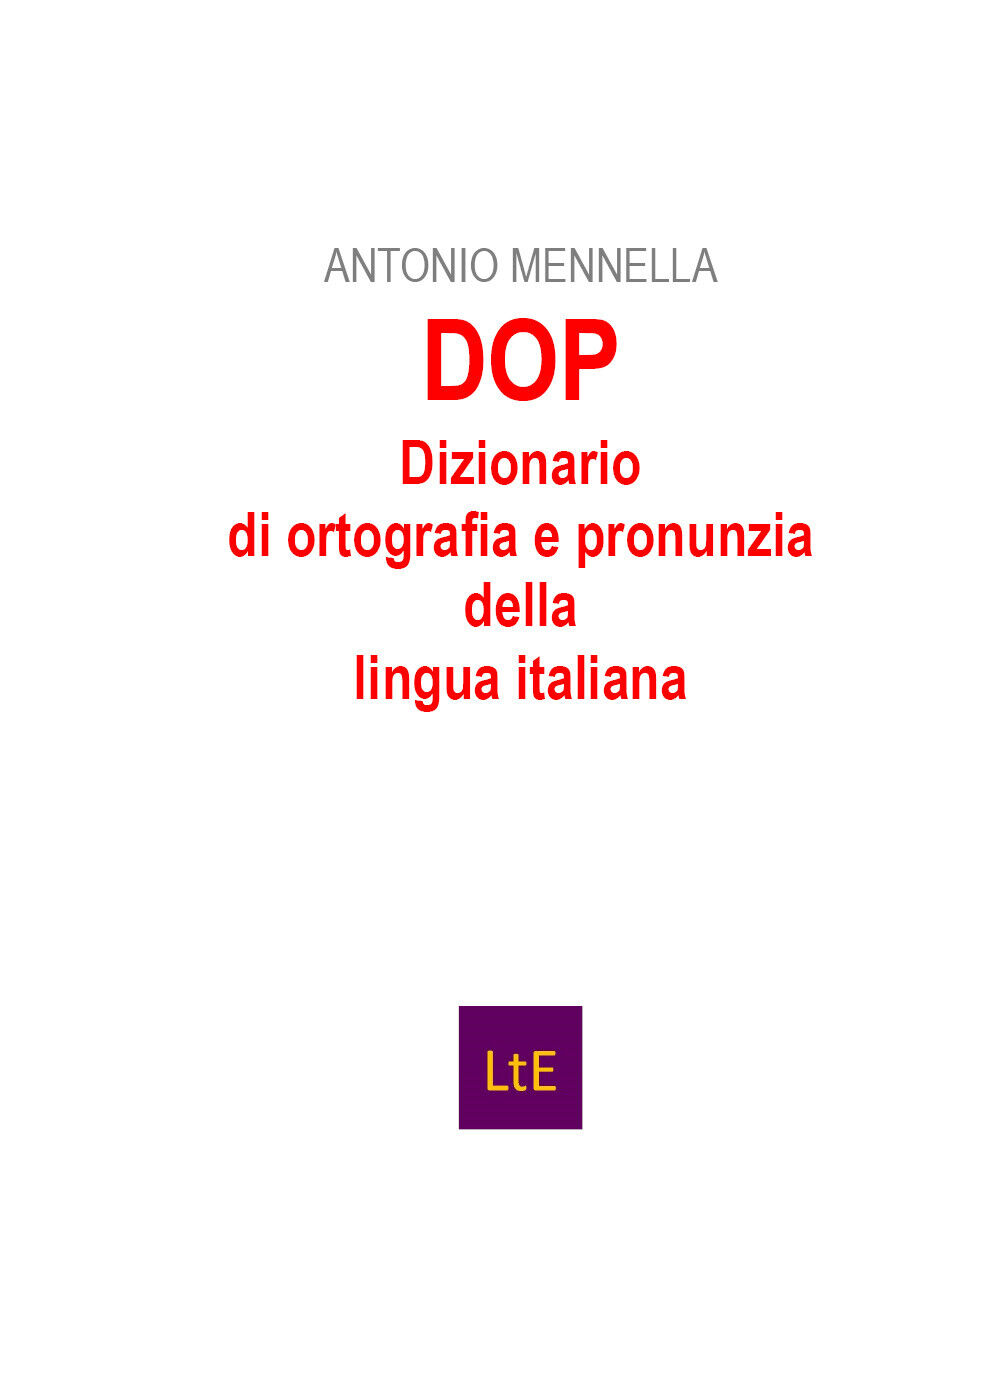 DOP Dizionario di ortografia e pronunzia della lingua italiana di Antonio Mennel